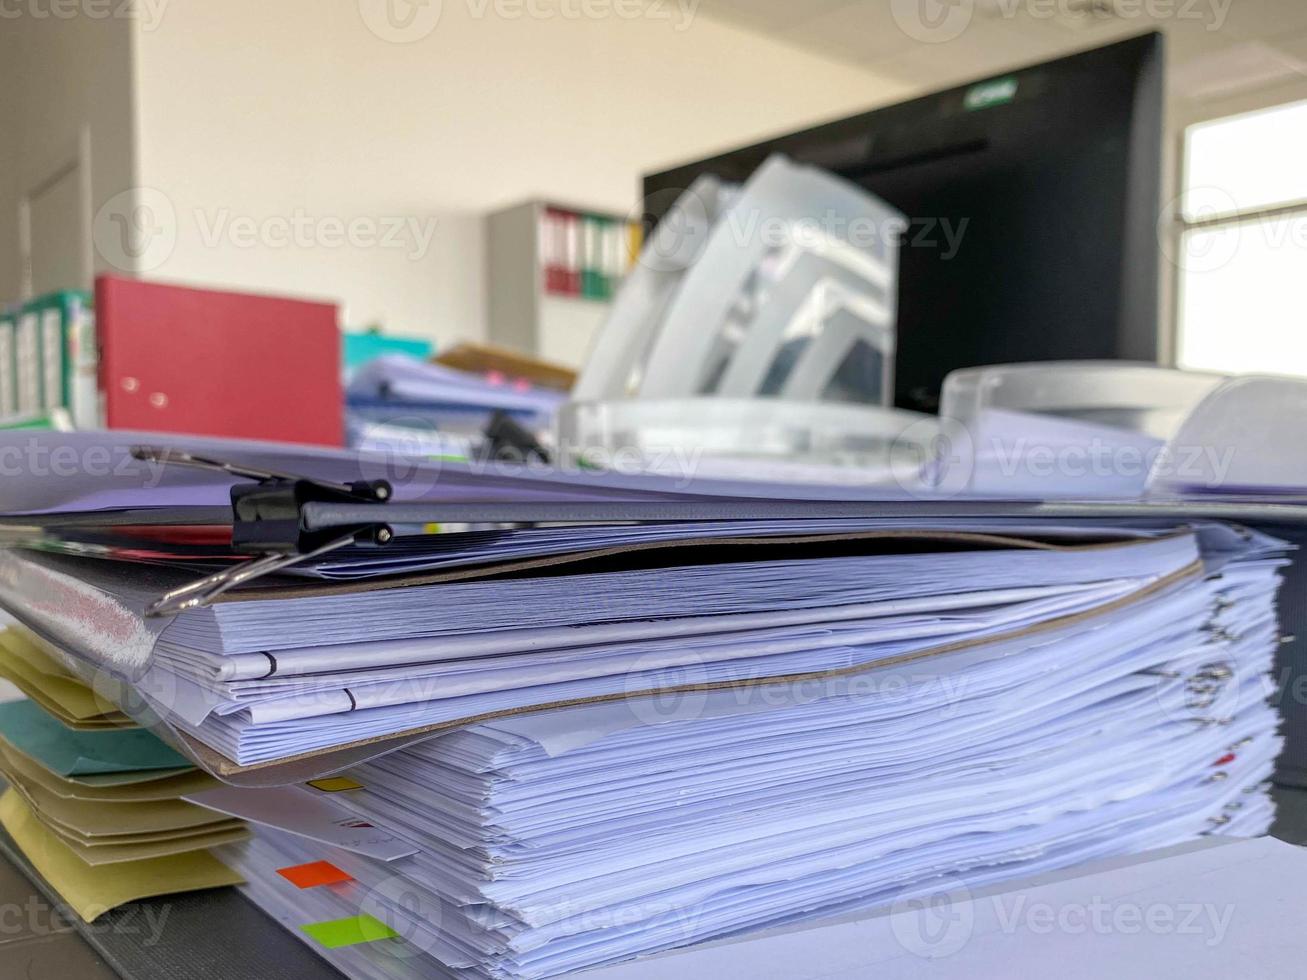 stack av papper dokument i arkiv filer med klämma papper på tabell på kontor, upptagen kontor och lugg av data oavslutat mappar på kontor skrivbord inomhus- nära fönster, företag begrepp foto